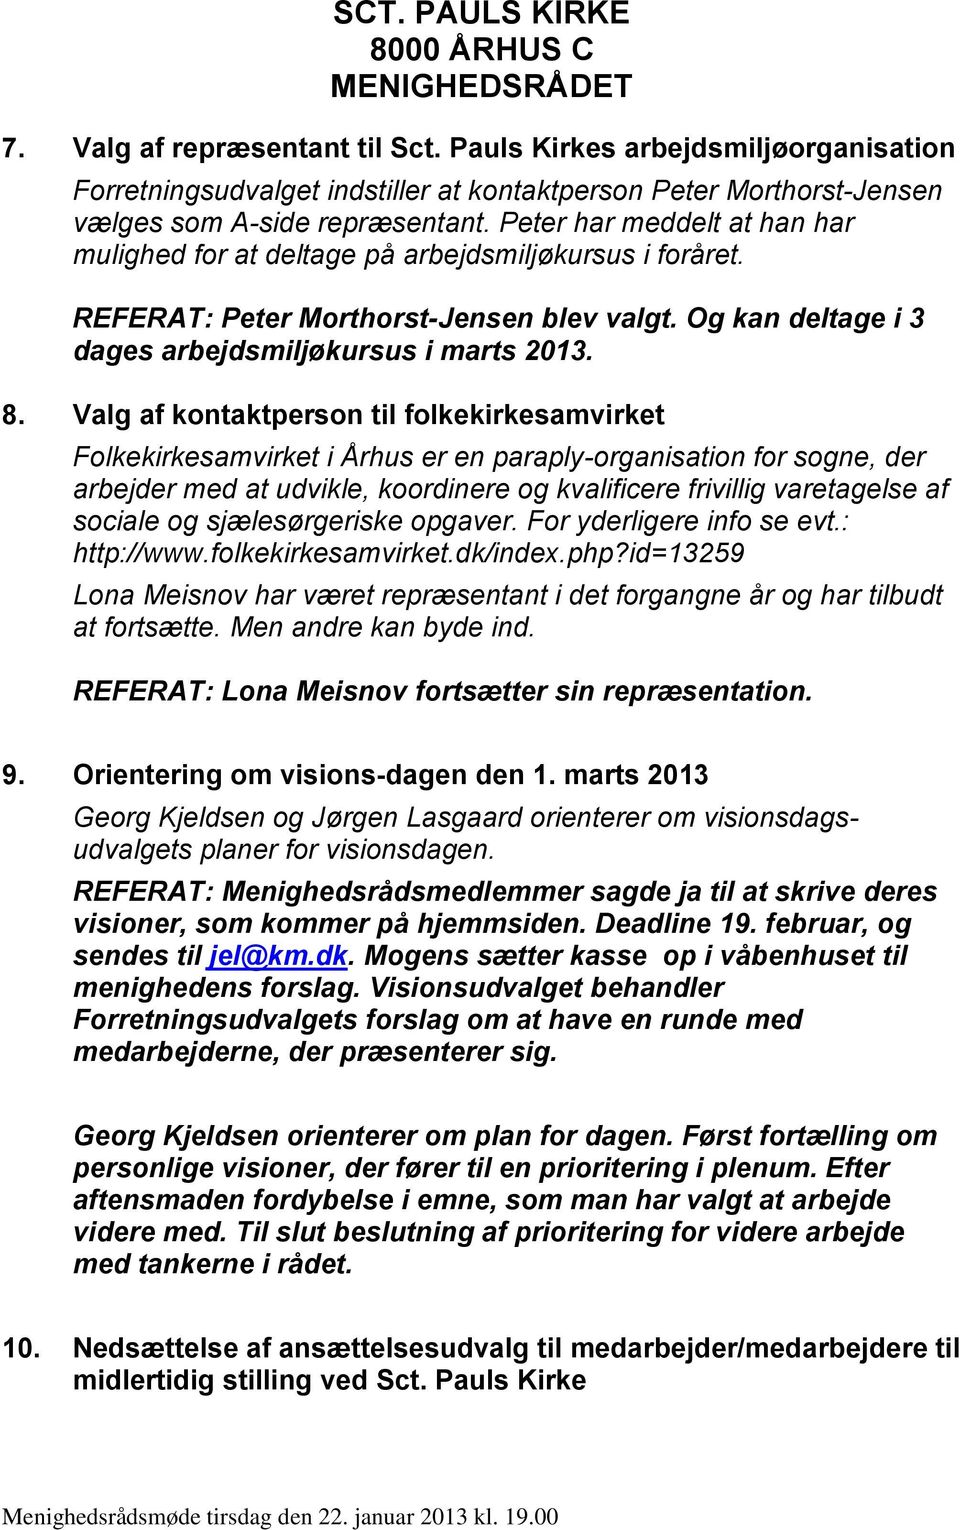 Valg af kontaktperson til folkekirkesamvirket Folkekirkesamvirket i Århus er en paraply-organisation for sogne, der arbejder med at udvikle, koordinere og kvalificere frivillig varetagelse af sociale